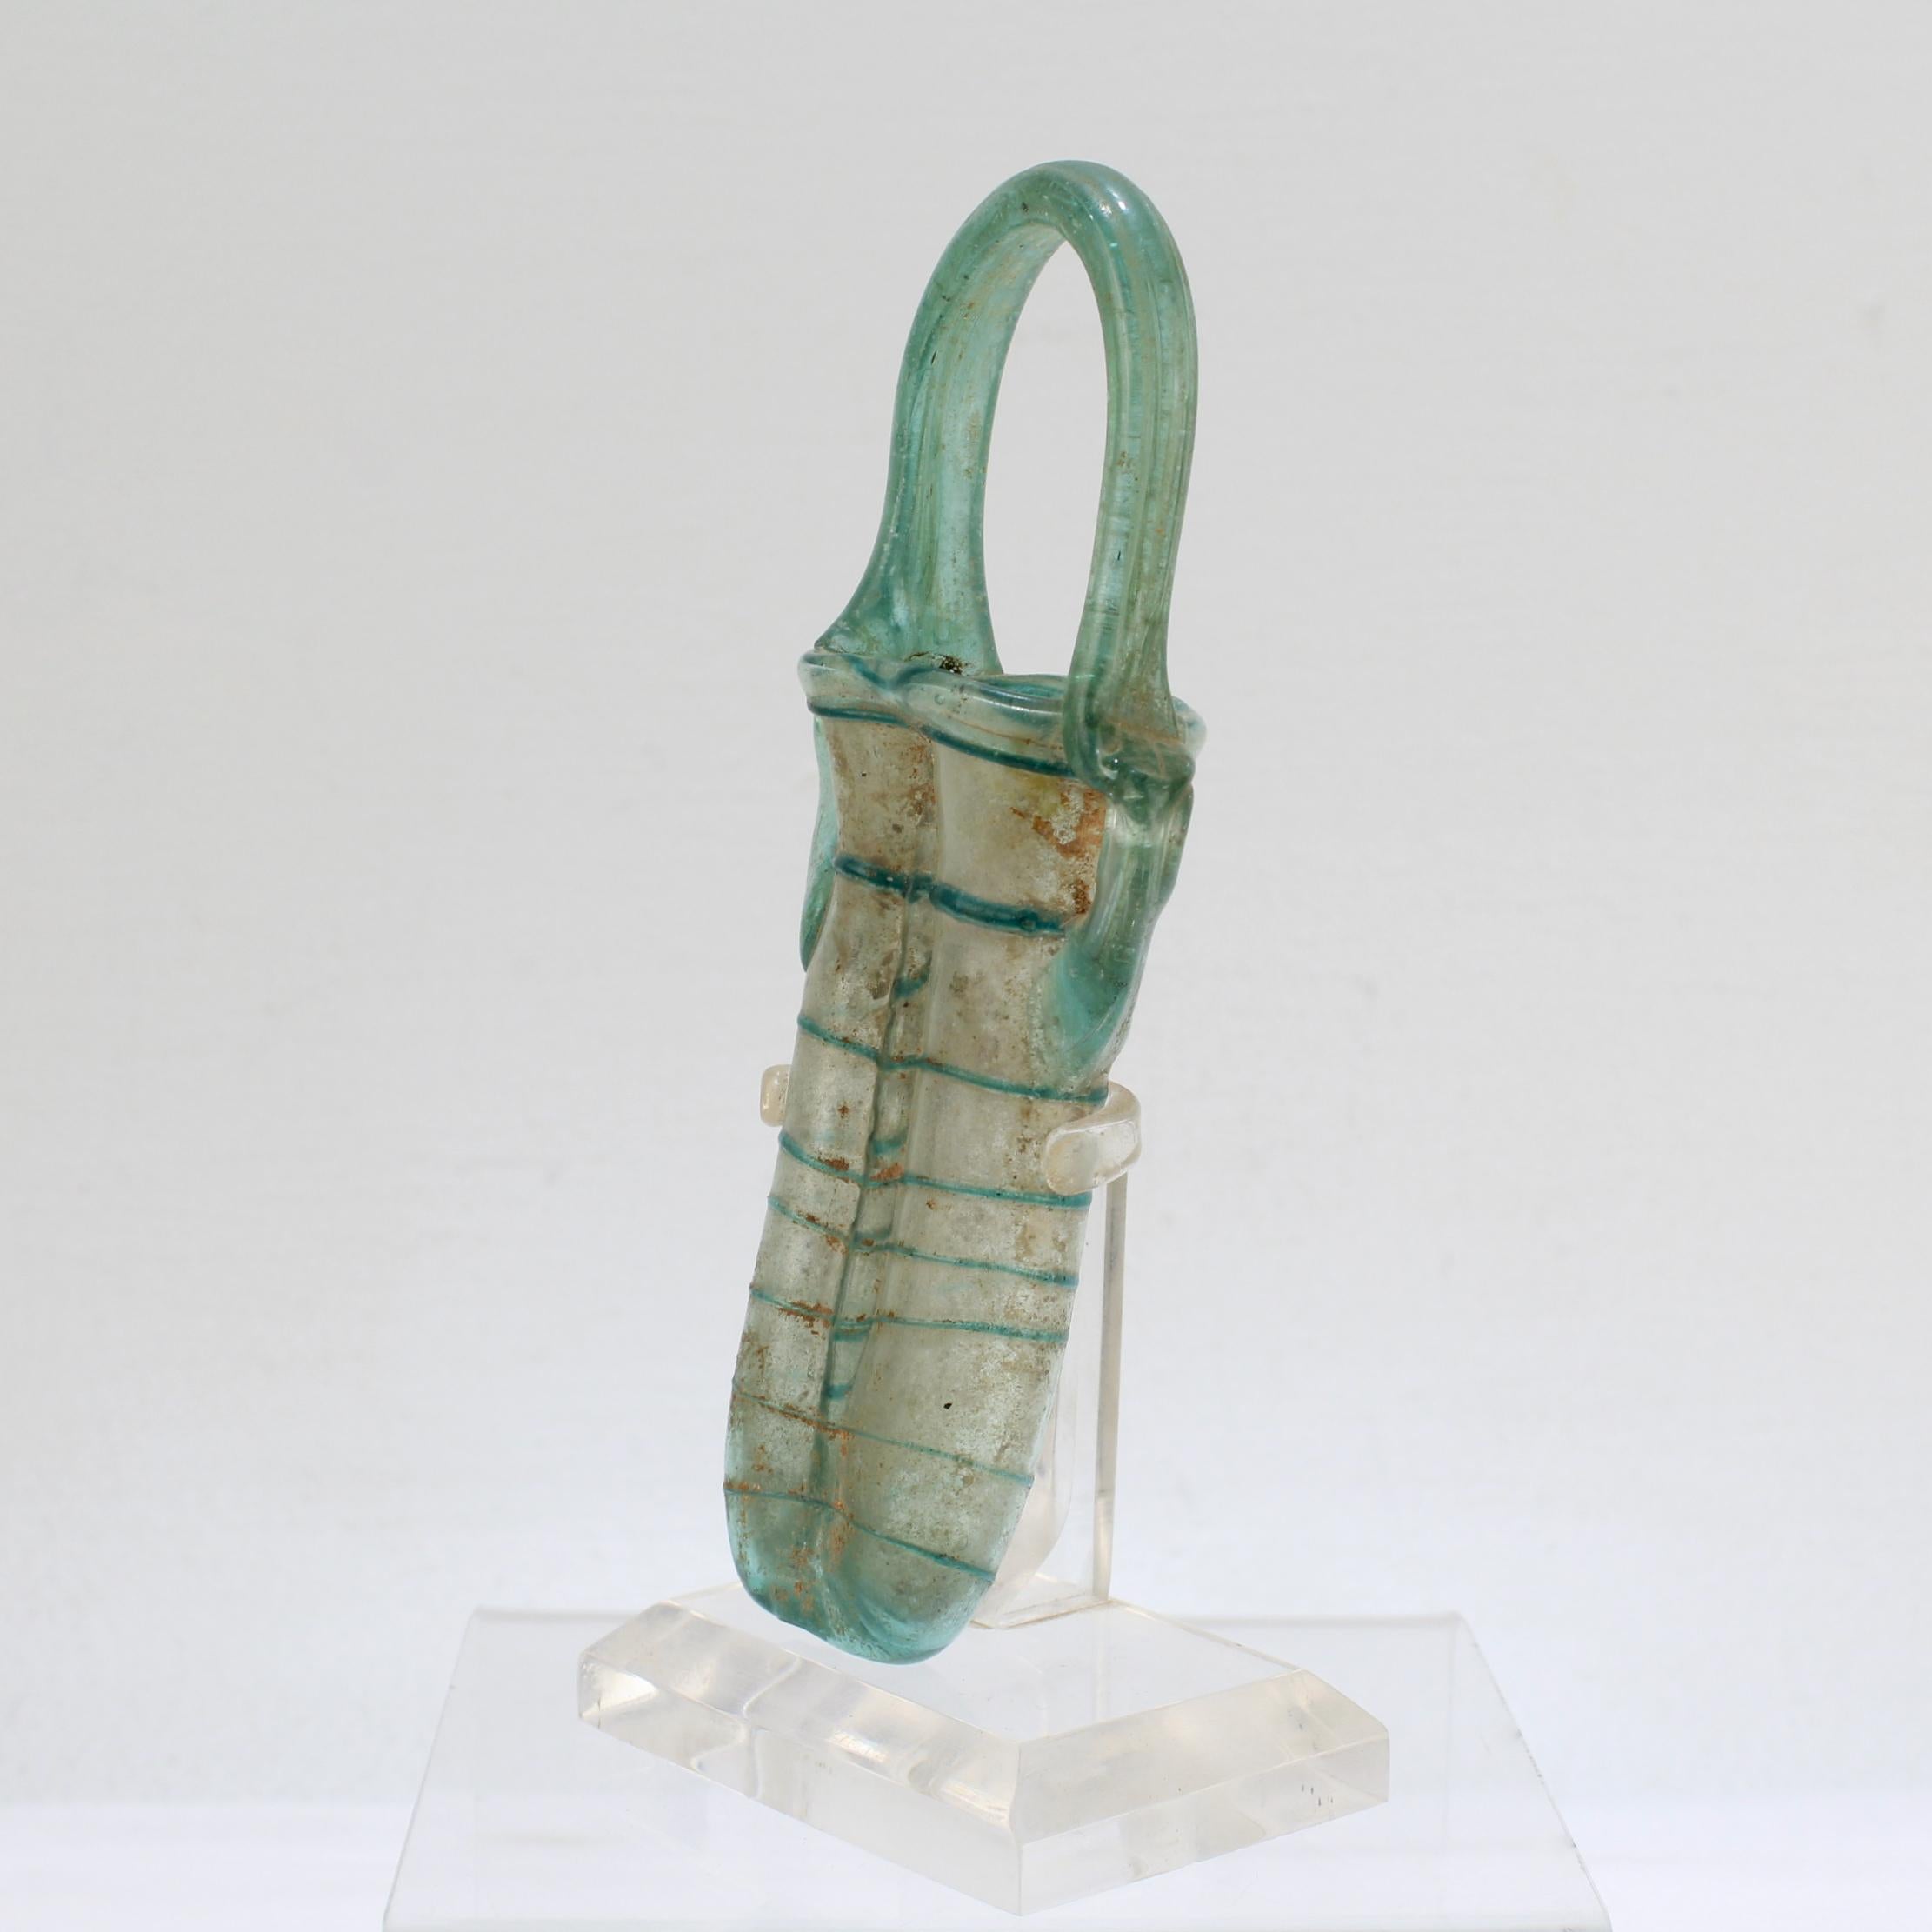 Doppel-Unguentarium aus antikem römischem Glas in Klar- und Aquafarbenem Glas (Klassisch-römisch)